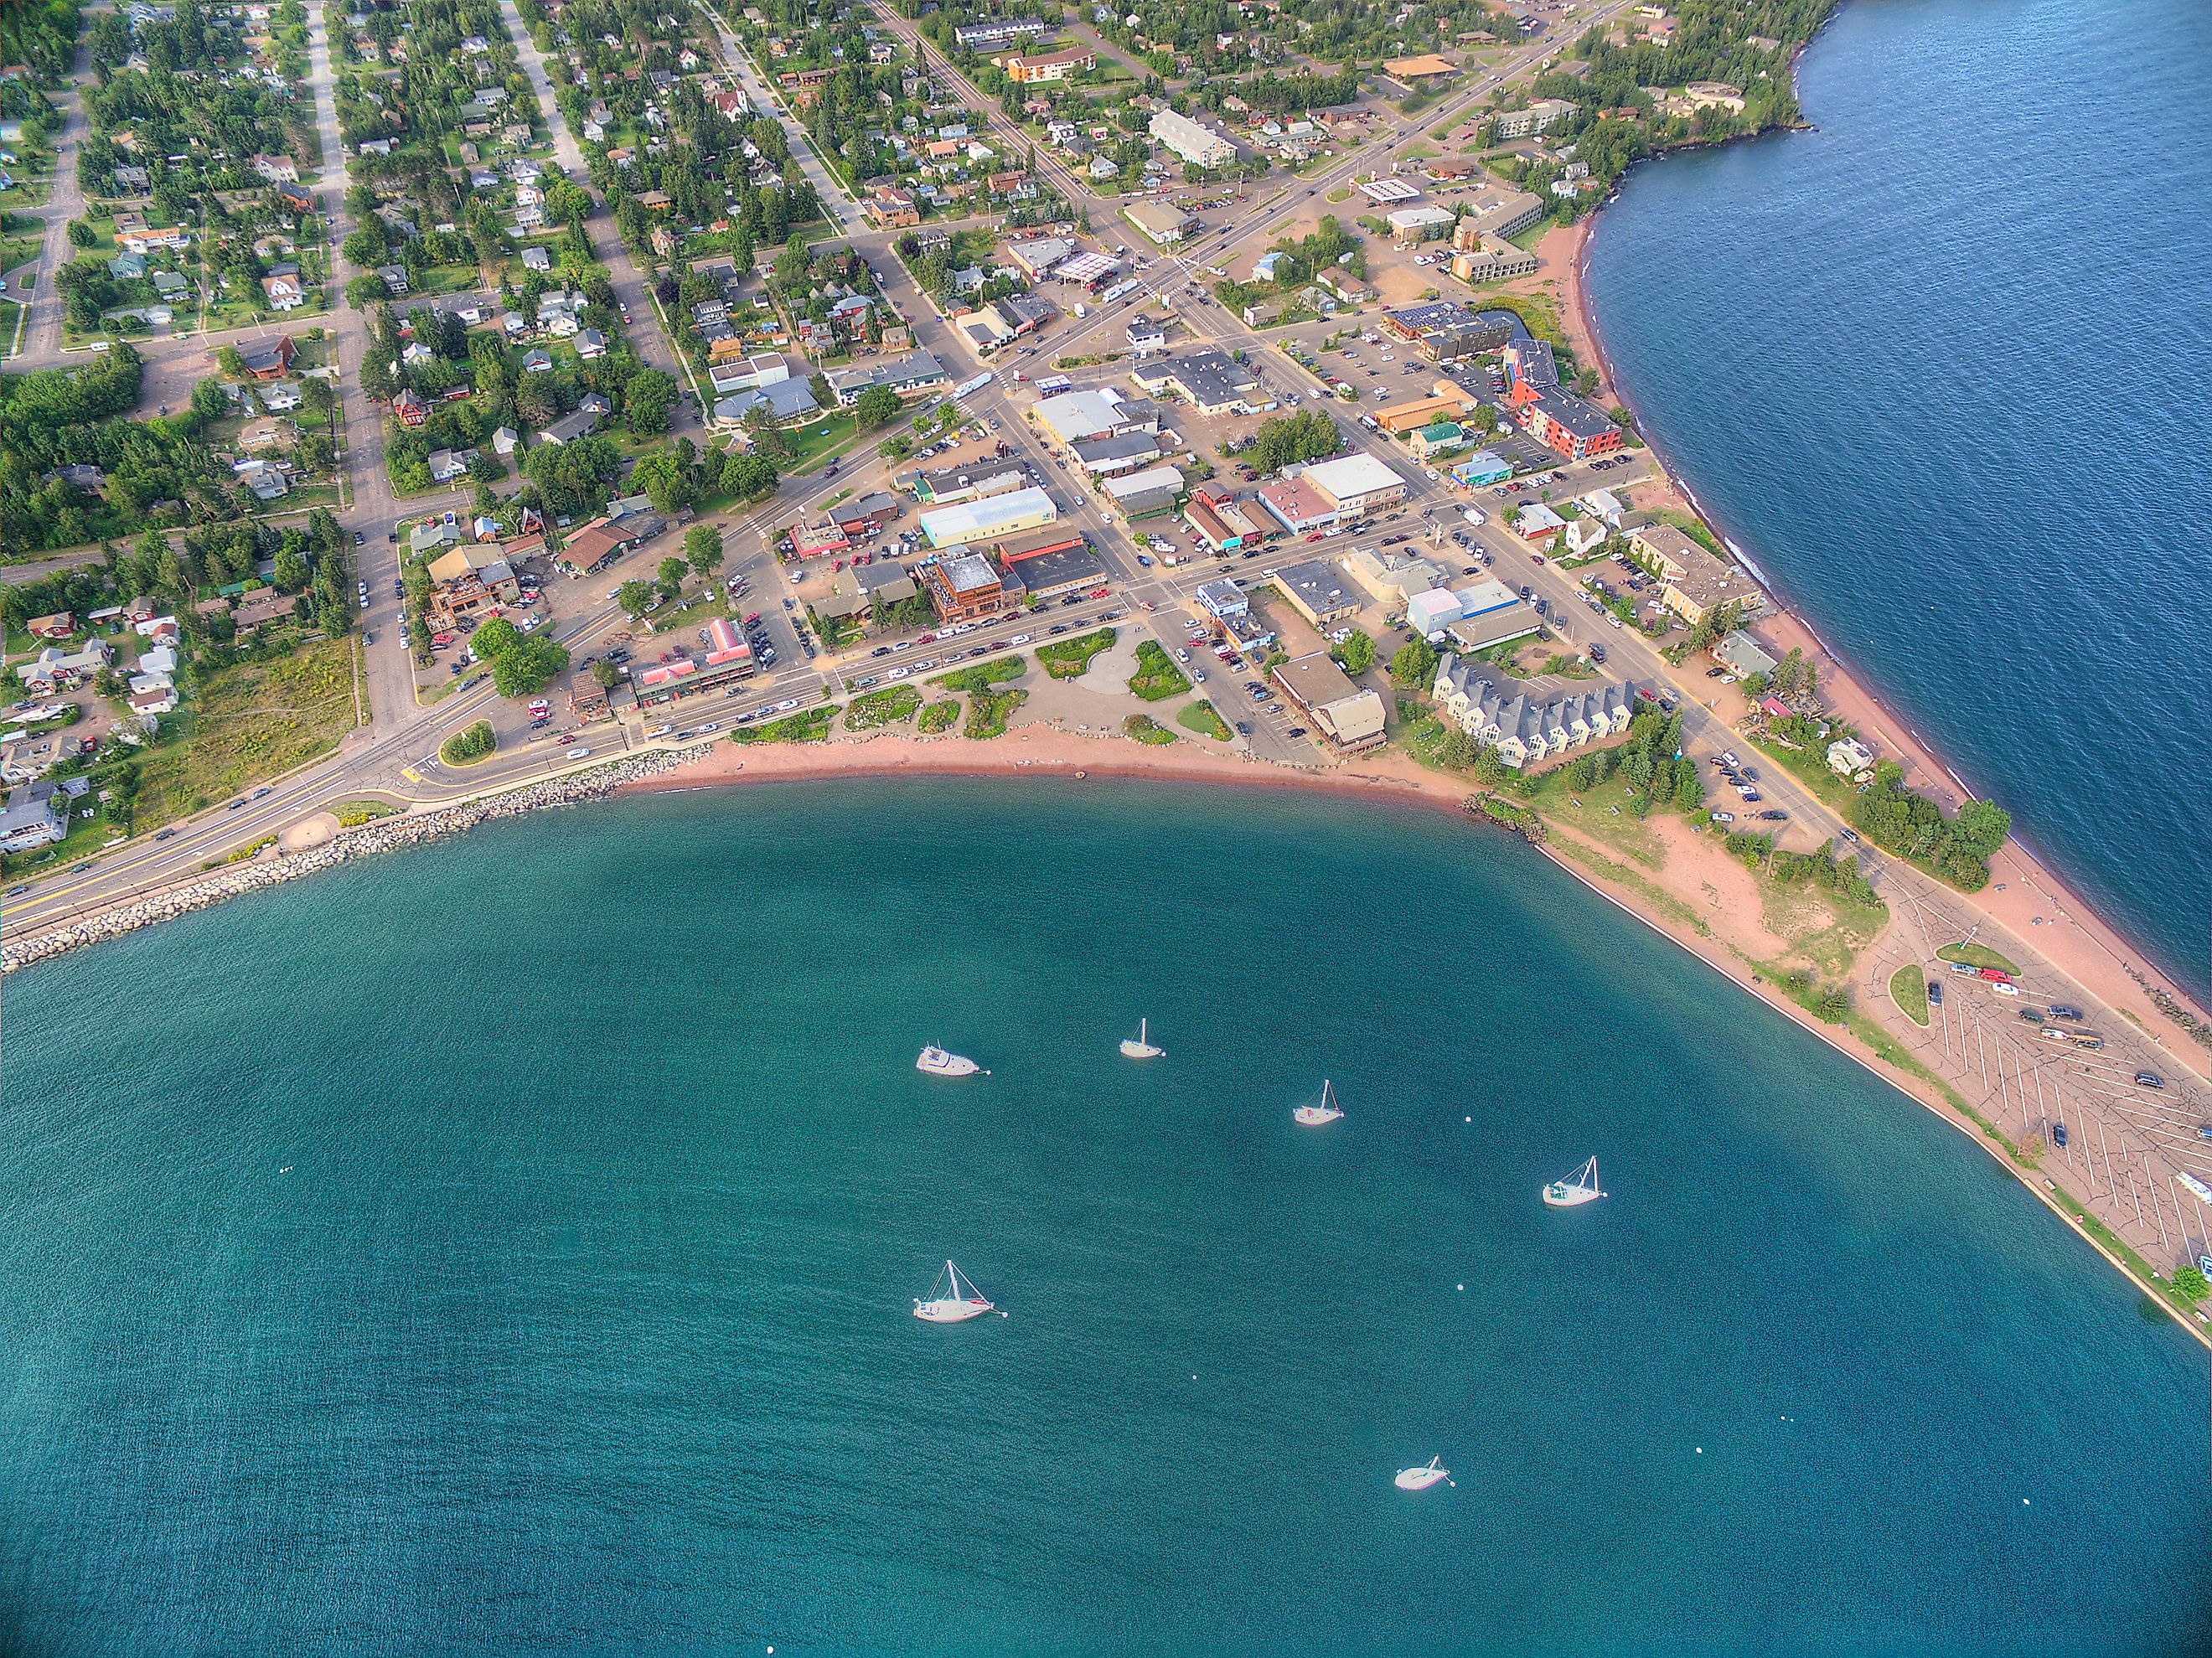 Aerial view of Grand Marais, Minnesota.